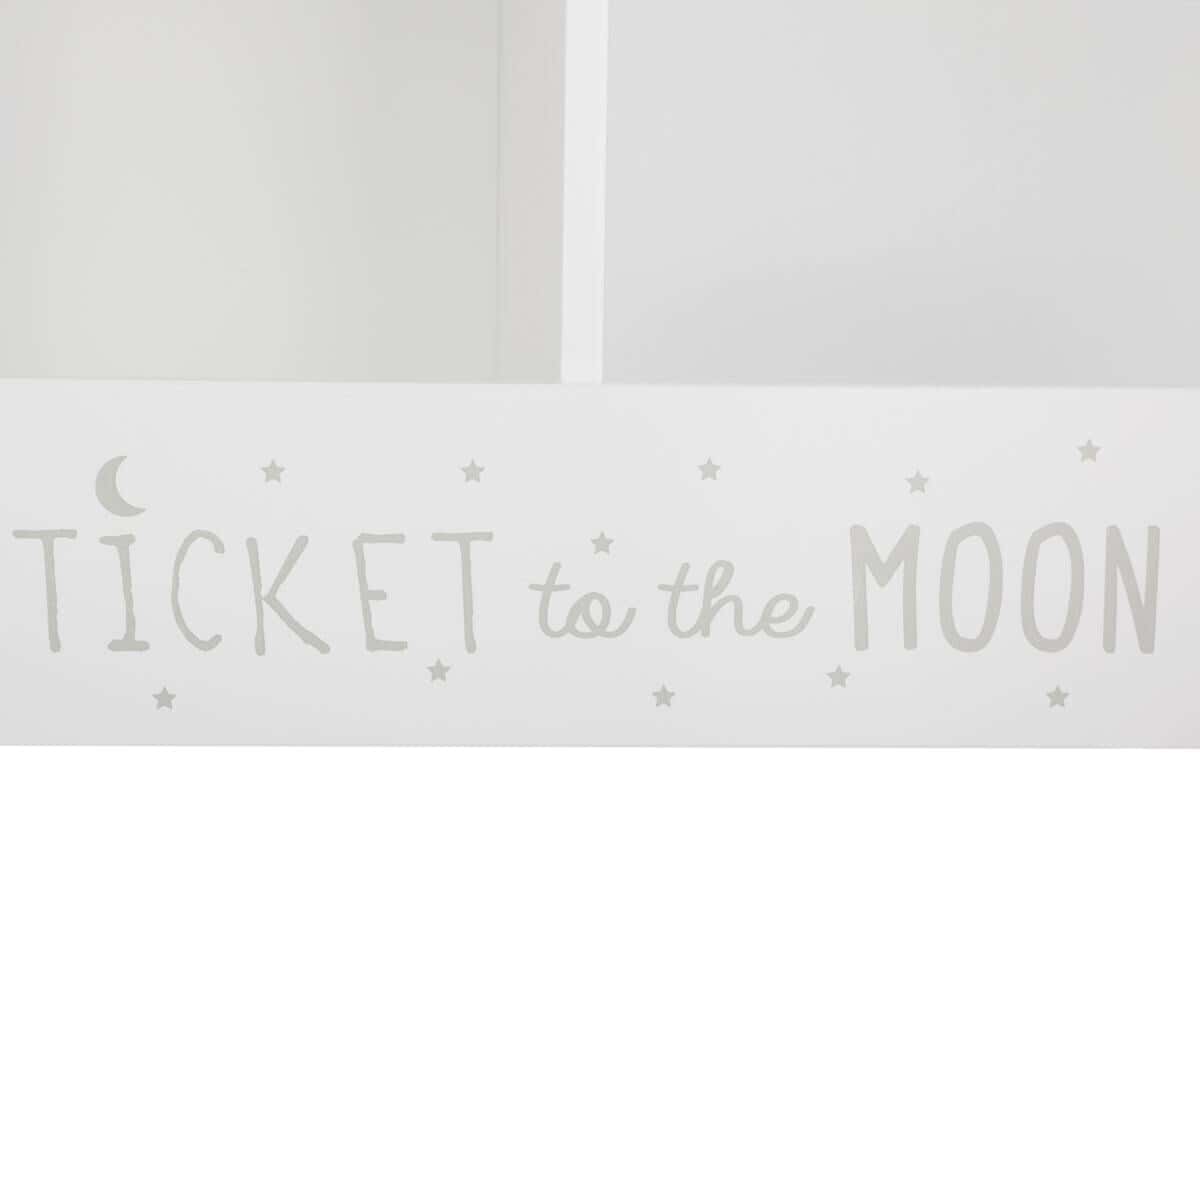 White bookshelf, Ticket to the moon 